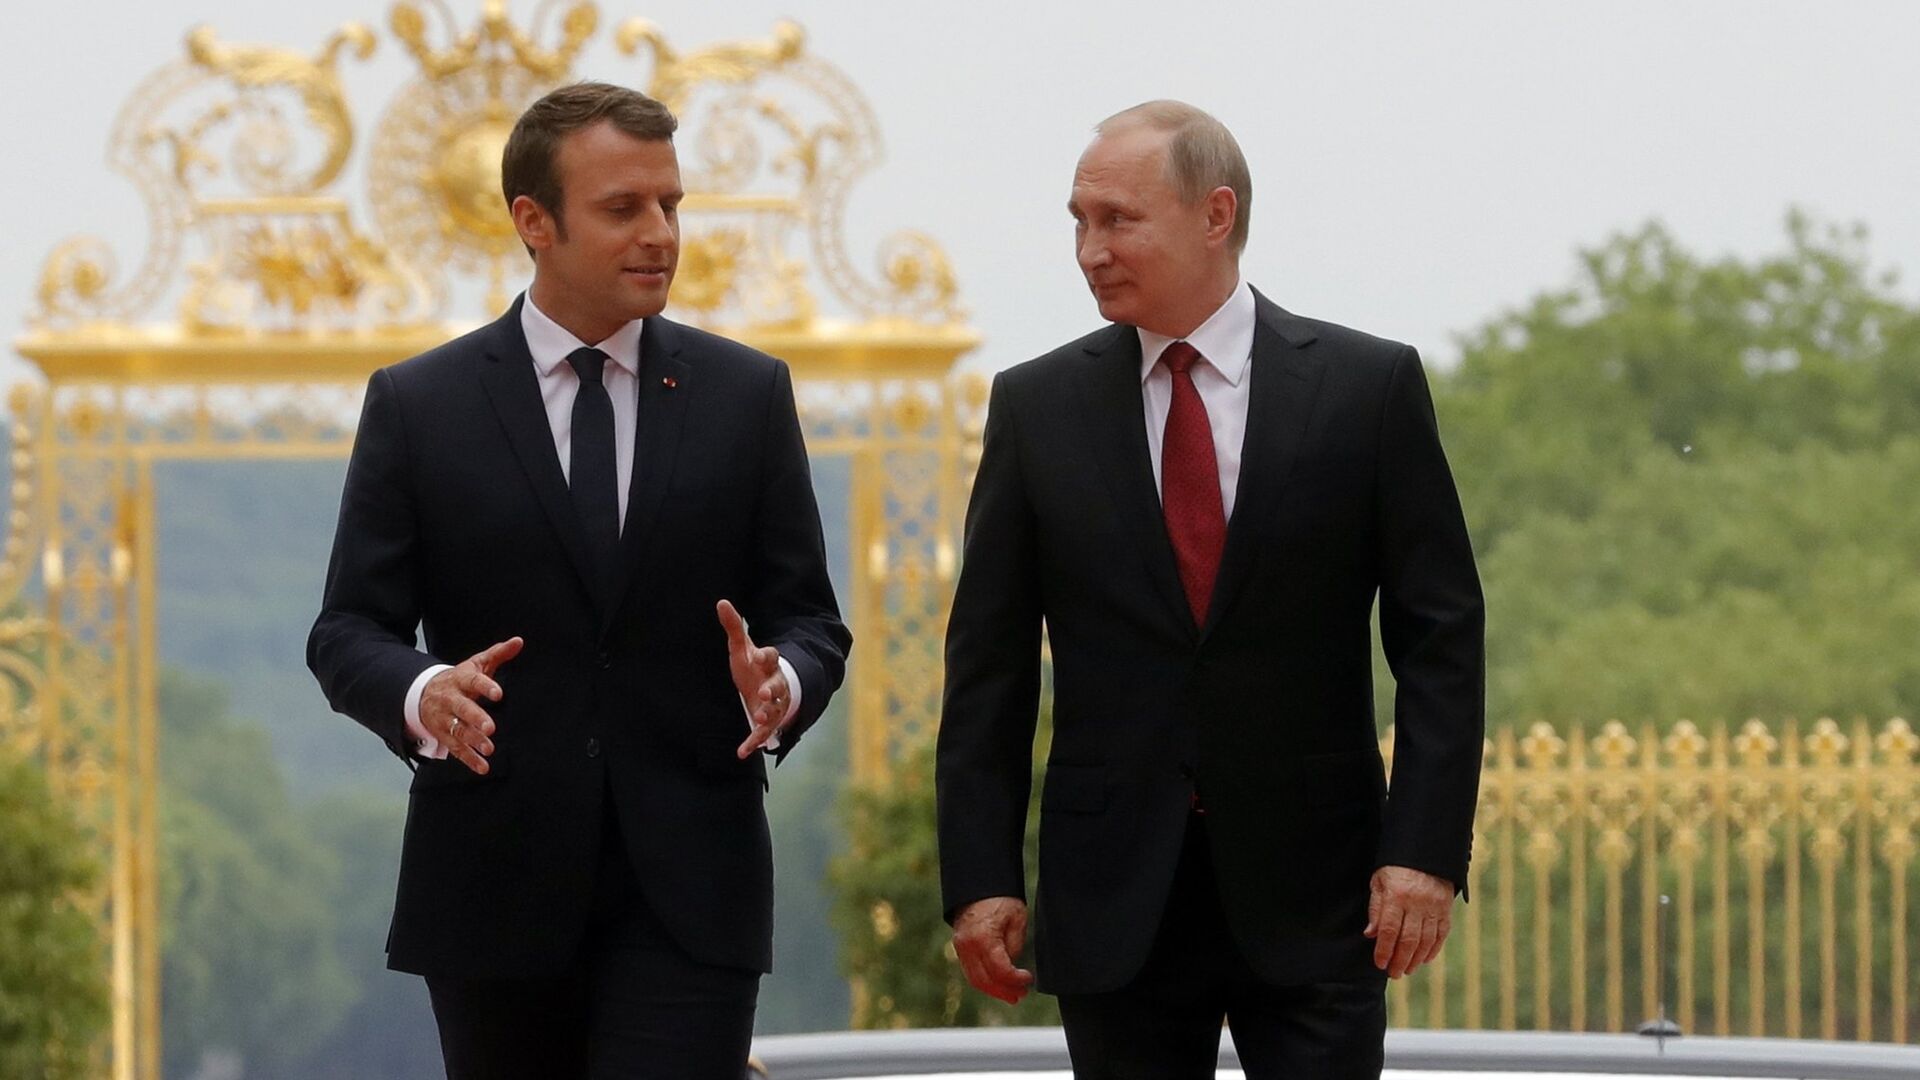 Ռուսաստանի և Ֆրանսիայի նախագահներ Վլադիմիր Պուտինը և Էմանուել Մակրոնը Վերսալի պալատում հանդիպման ժամանակ (29 մայիսի, 2017թ)․ Փարիզ - Sputnik Արմենիա, 1920, 03.12.2022